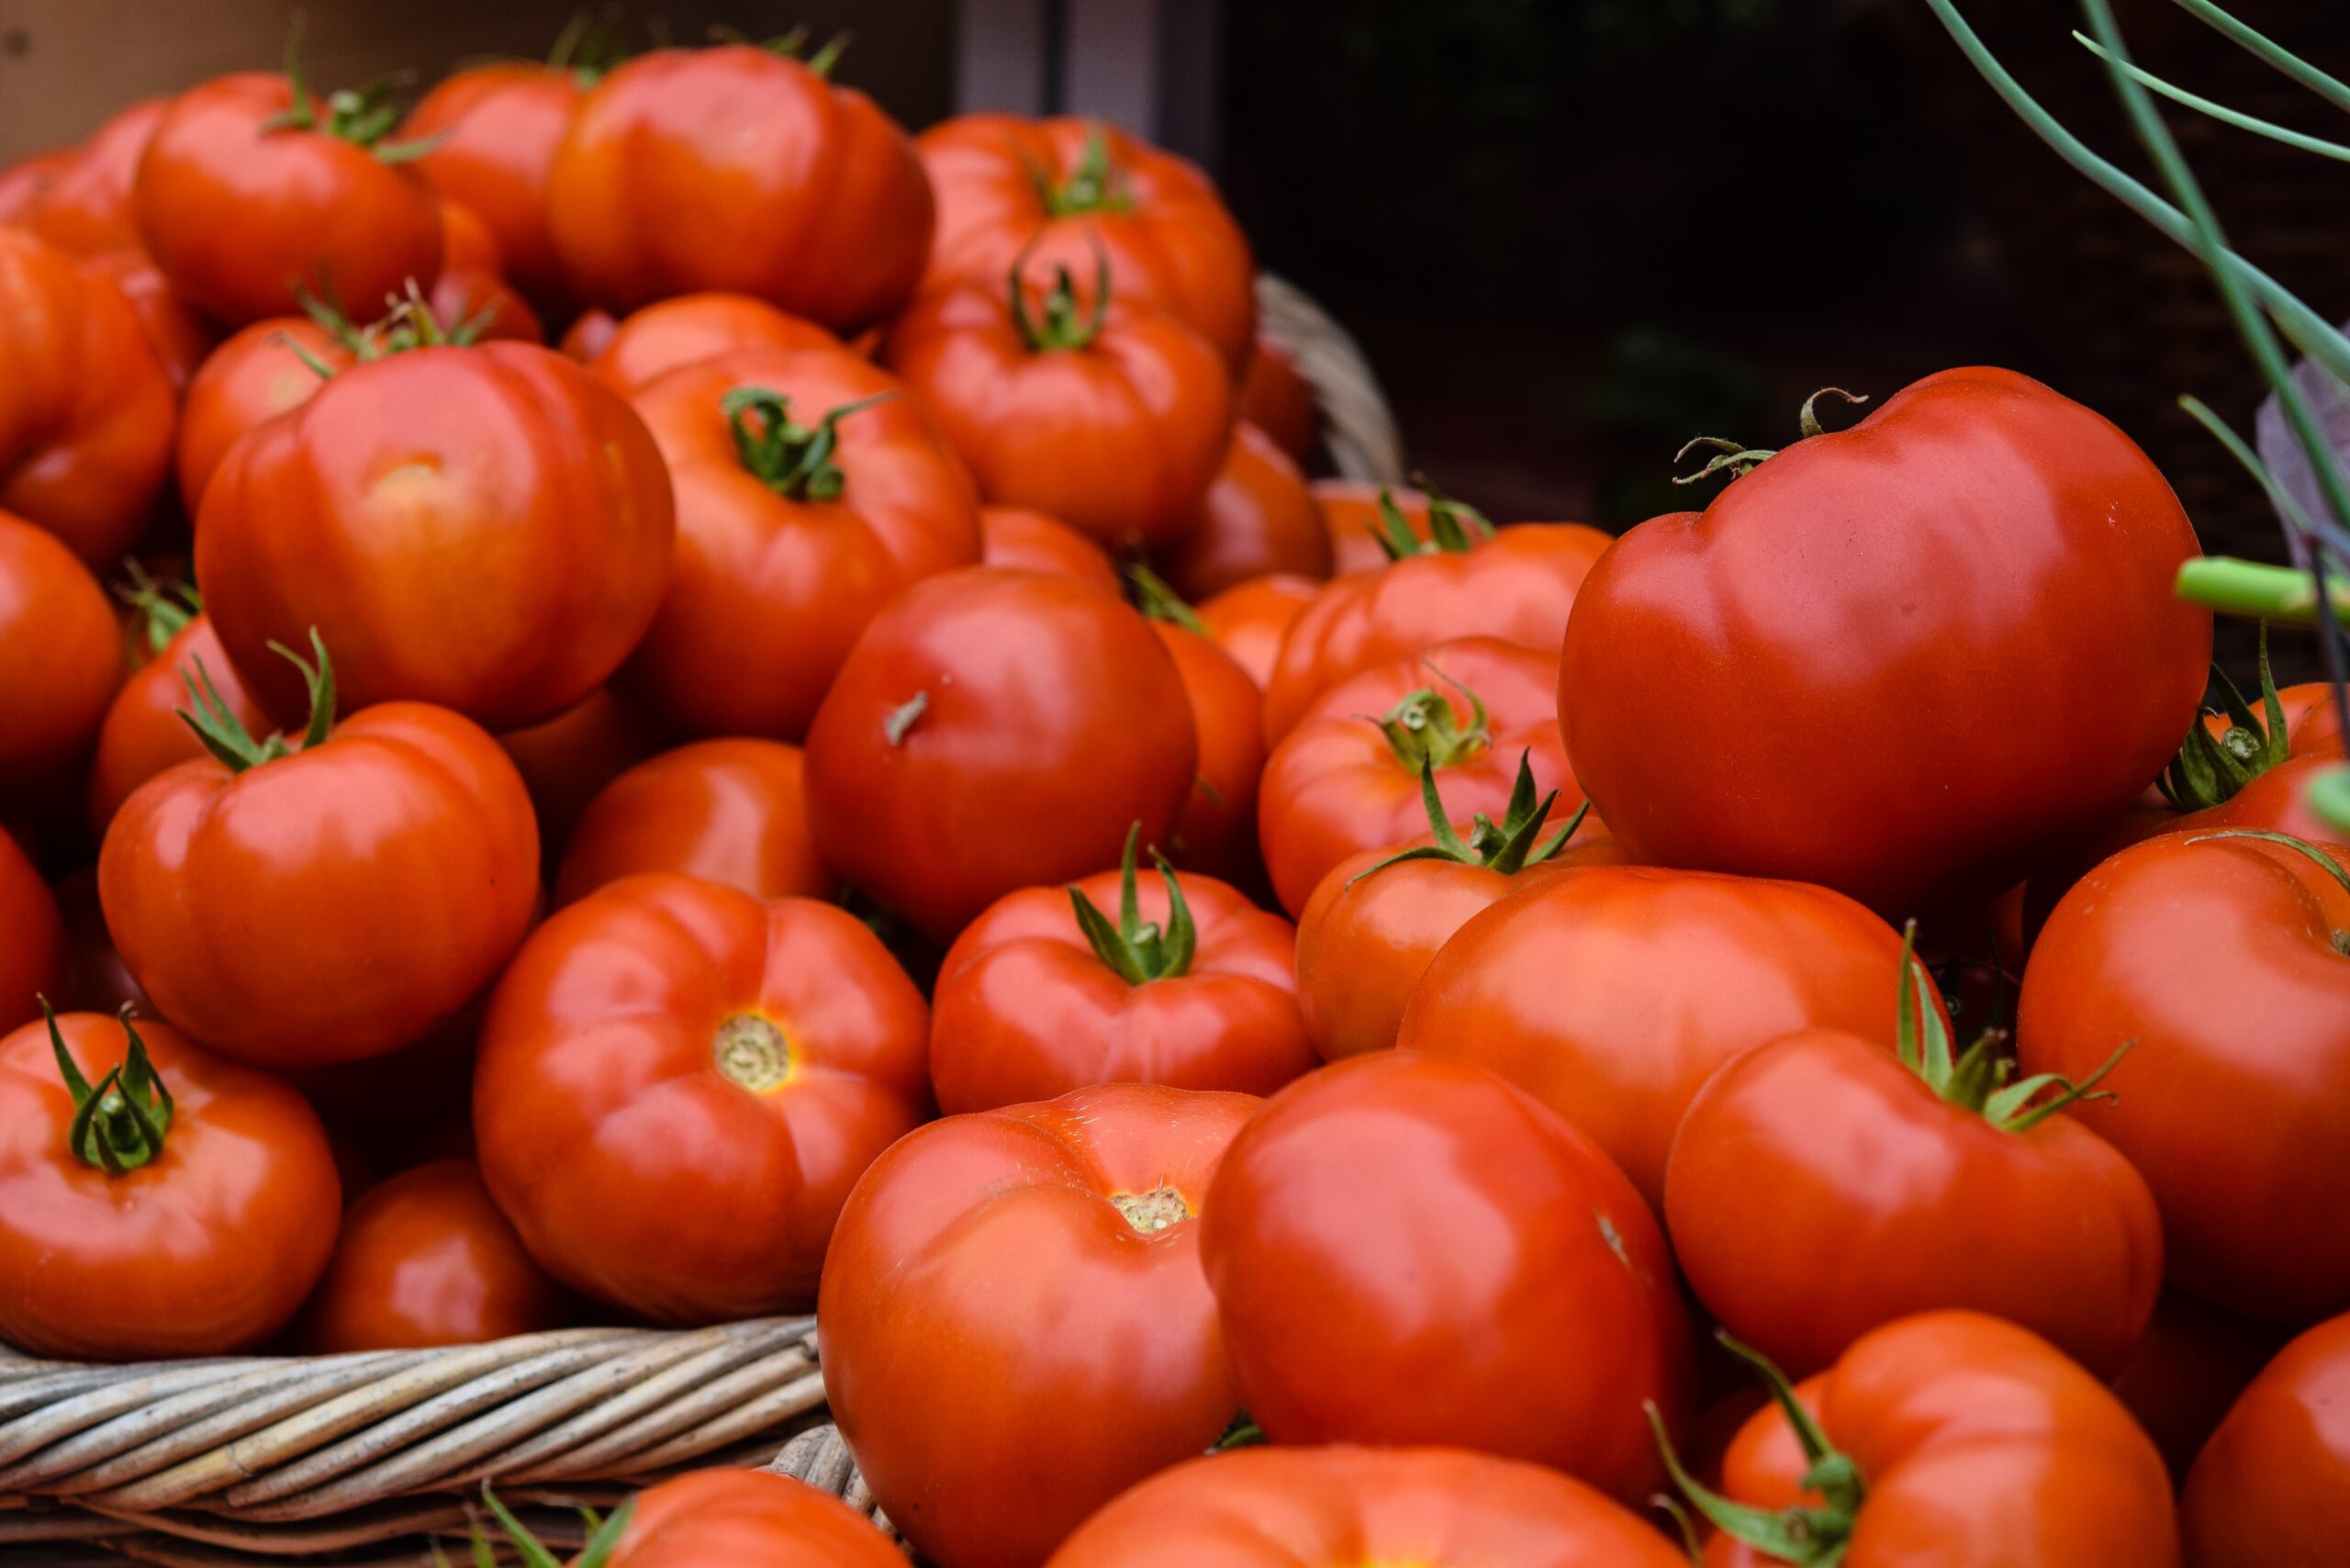 Tomatoes Roma per lb